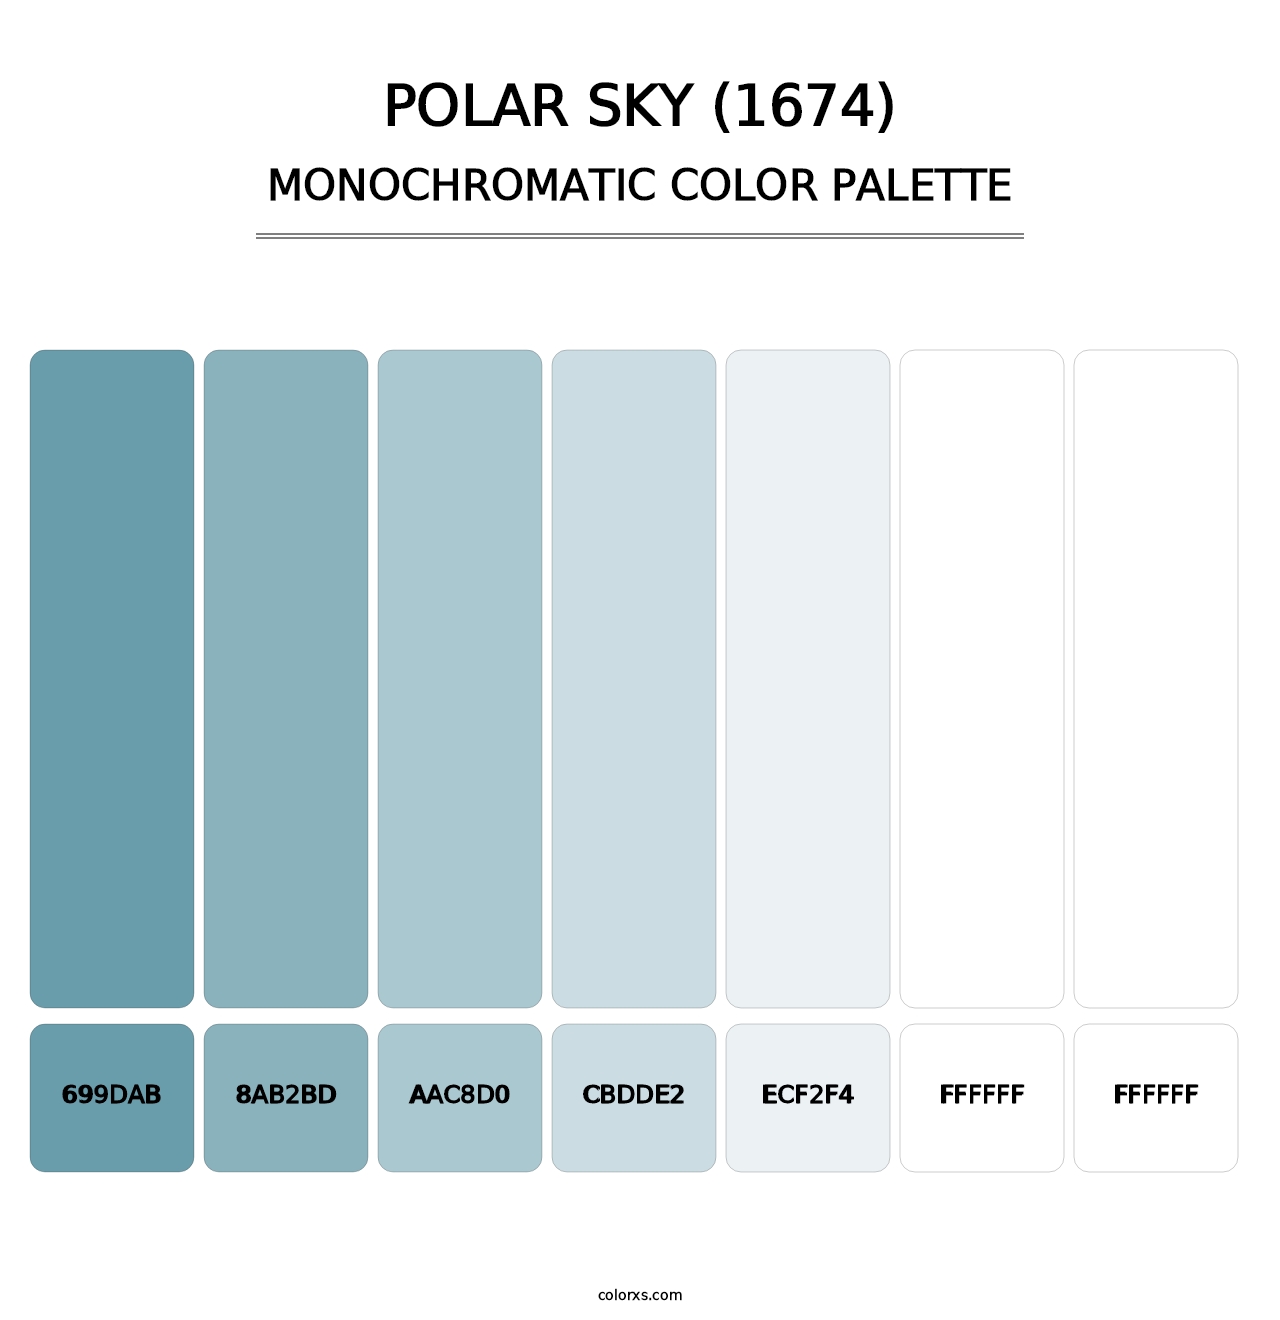 Polar Sky (1674) - Monochromatic Color Palette